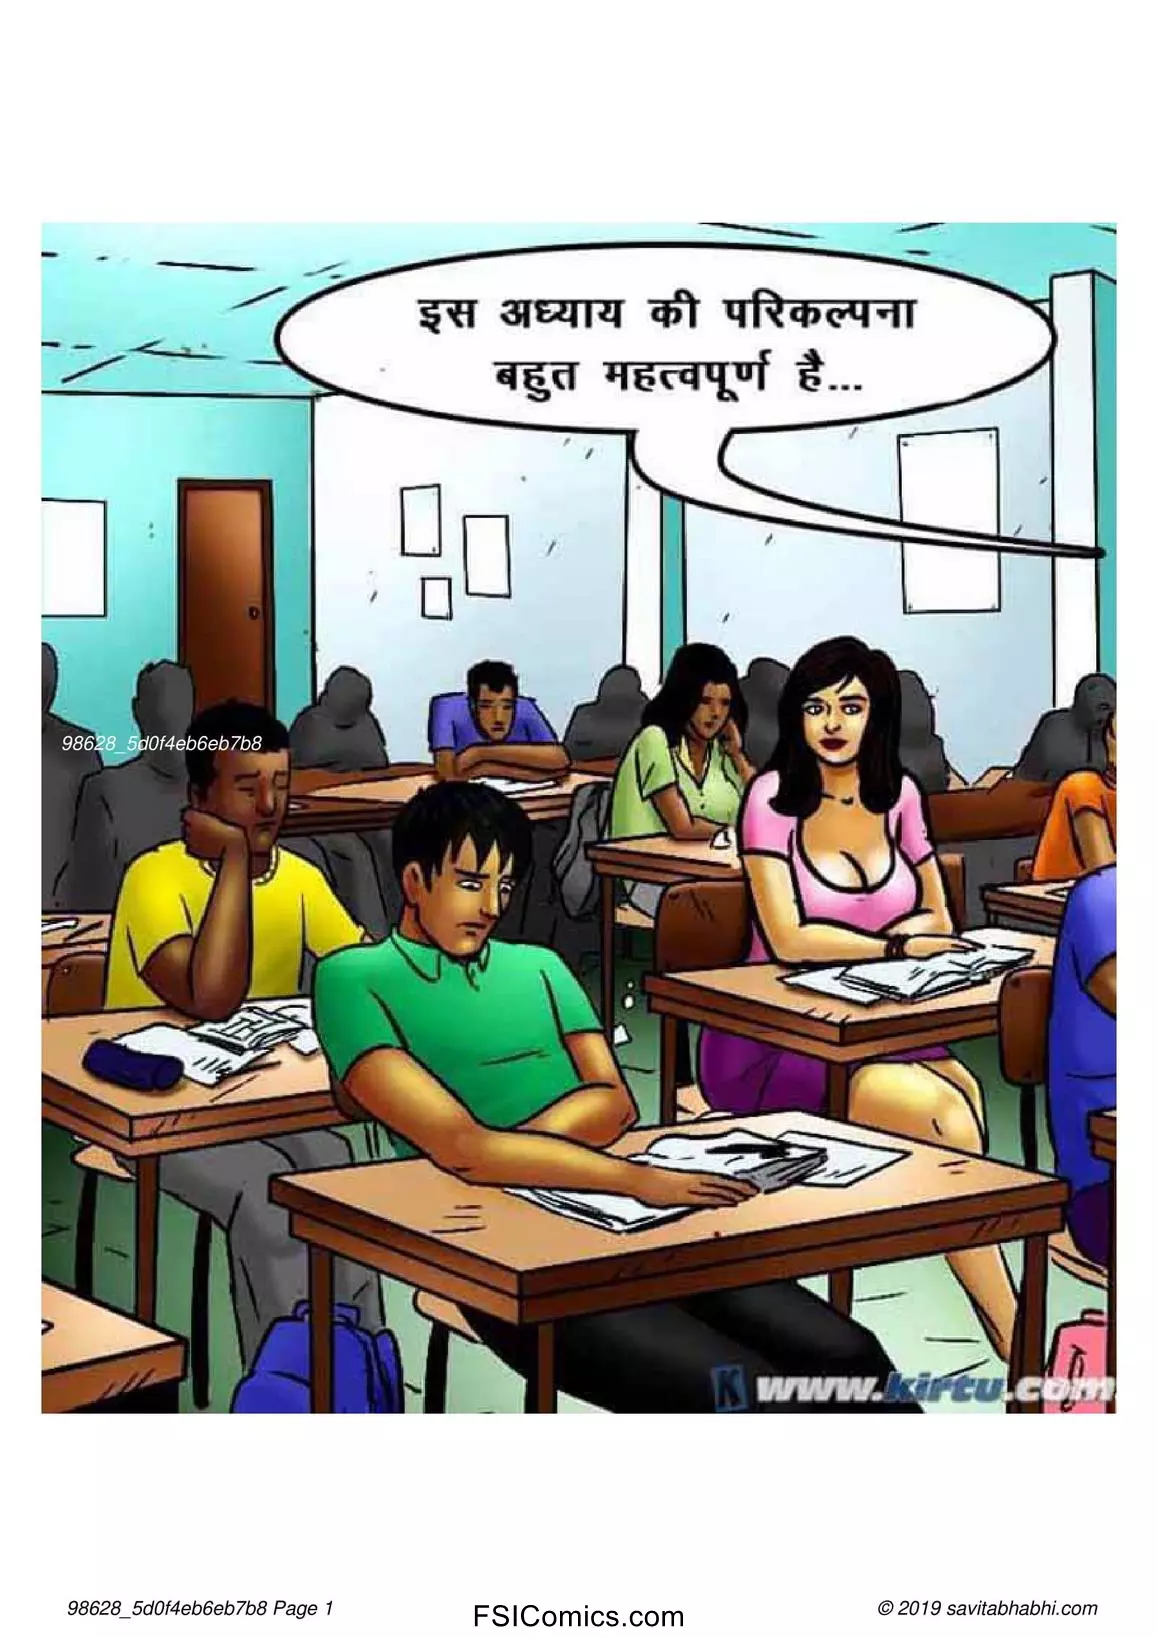 Savita Bhabhi Episode 69 Hindi – छात्रों का मामला – सविता भाभी गयी – XXX अपार्टमेंट में - 15 - FSIComics